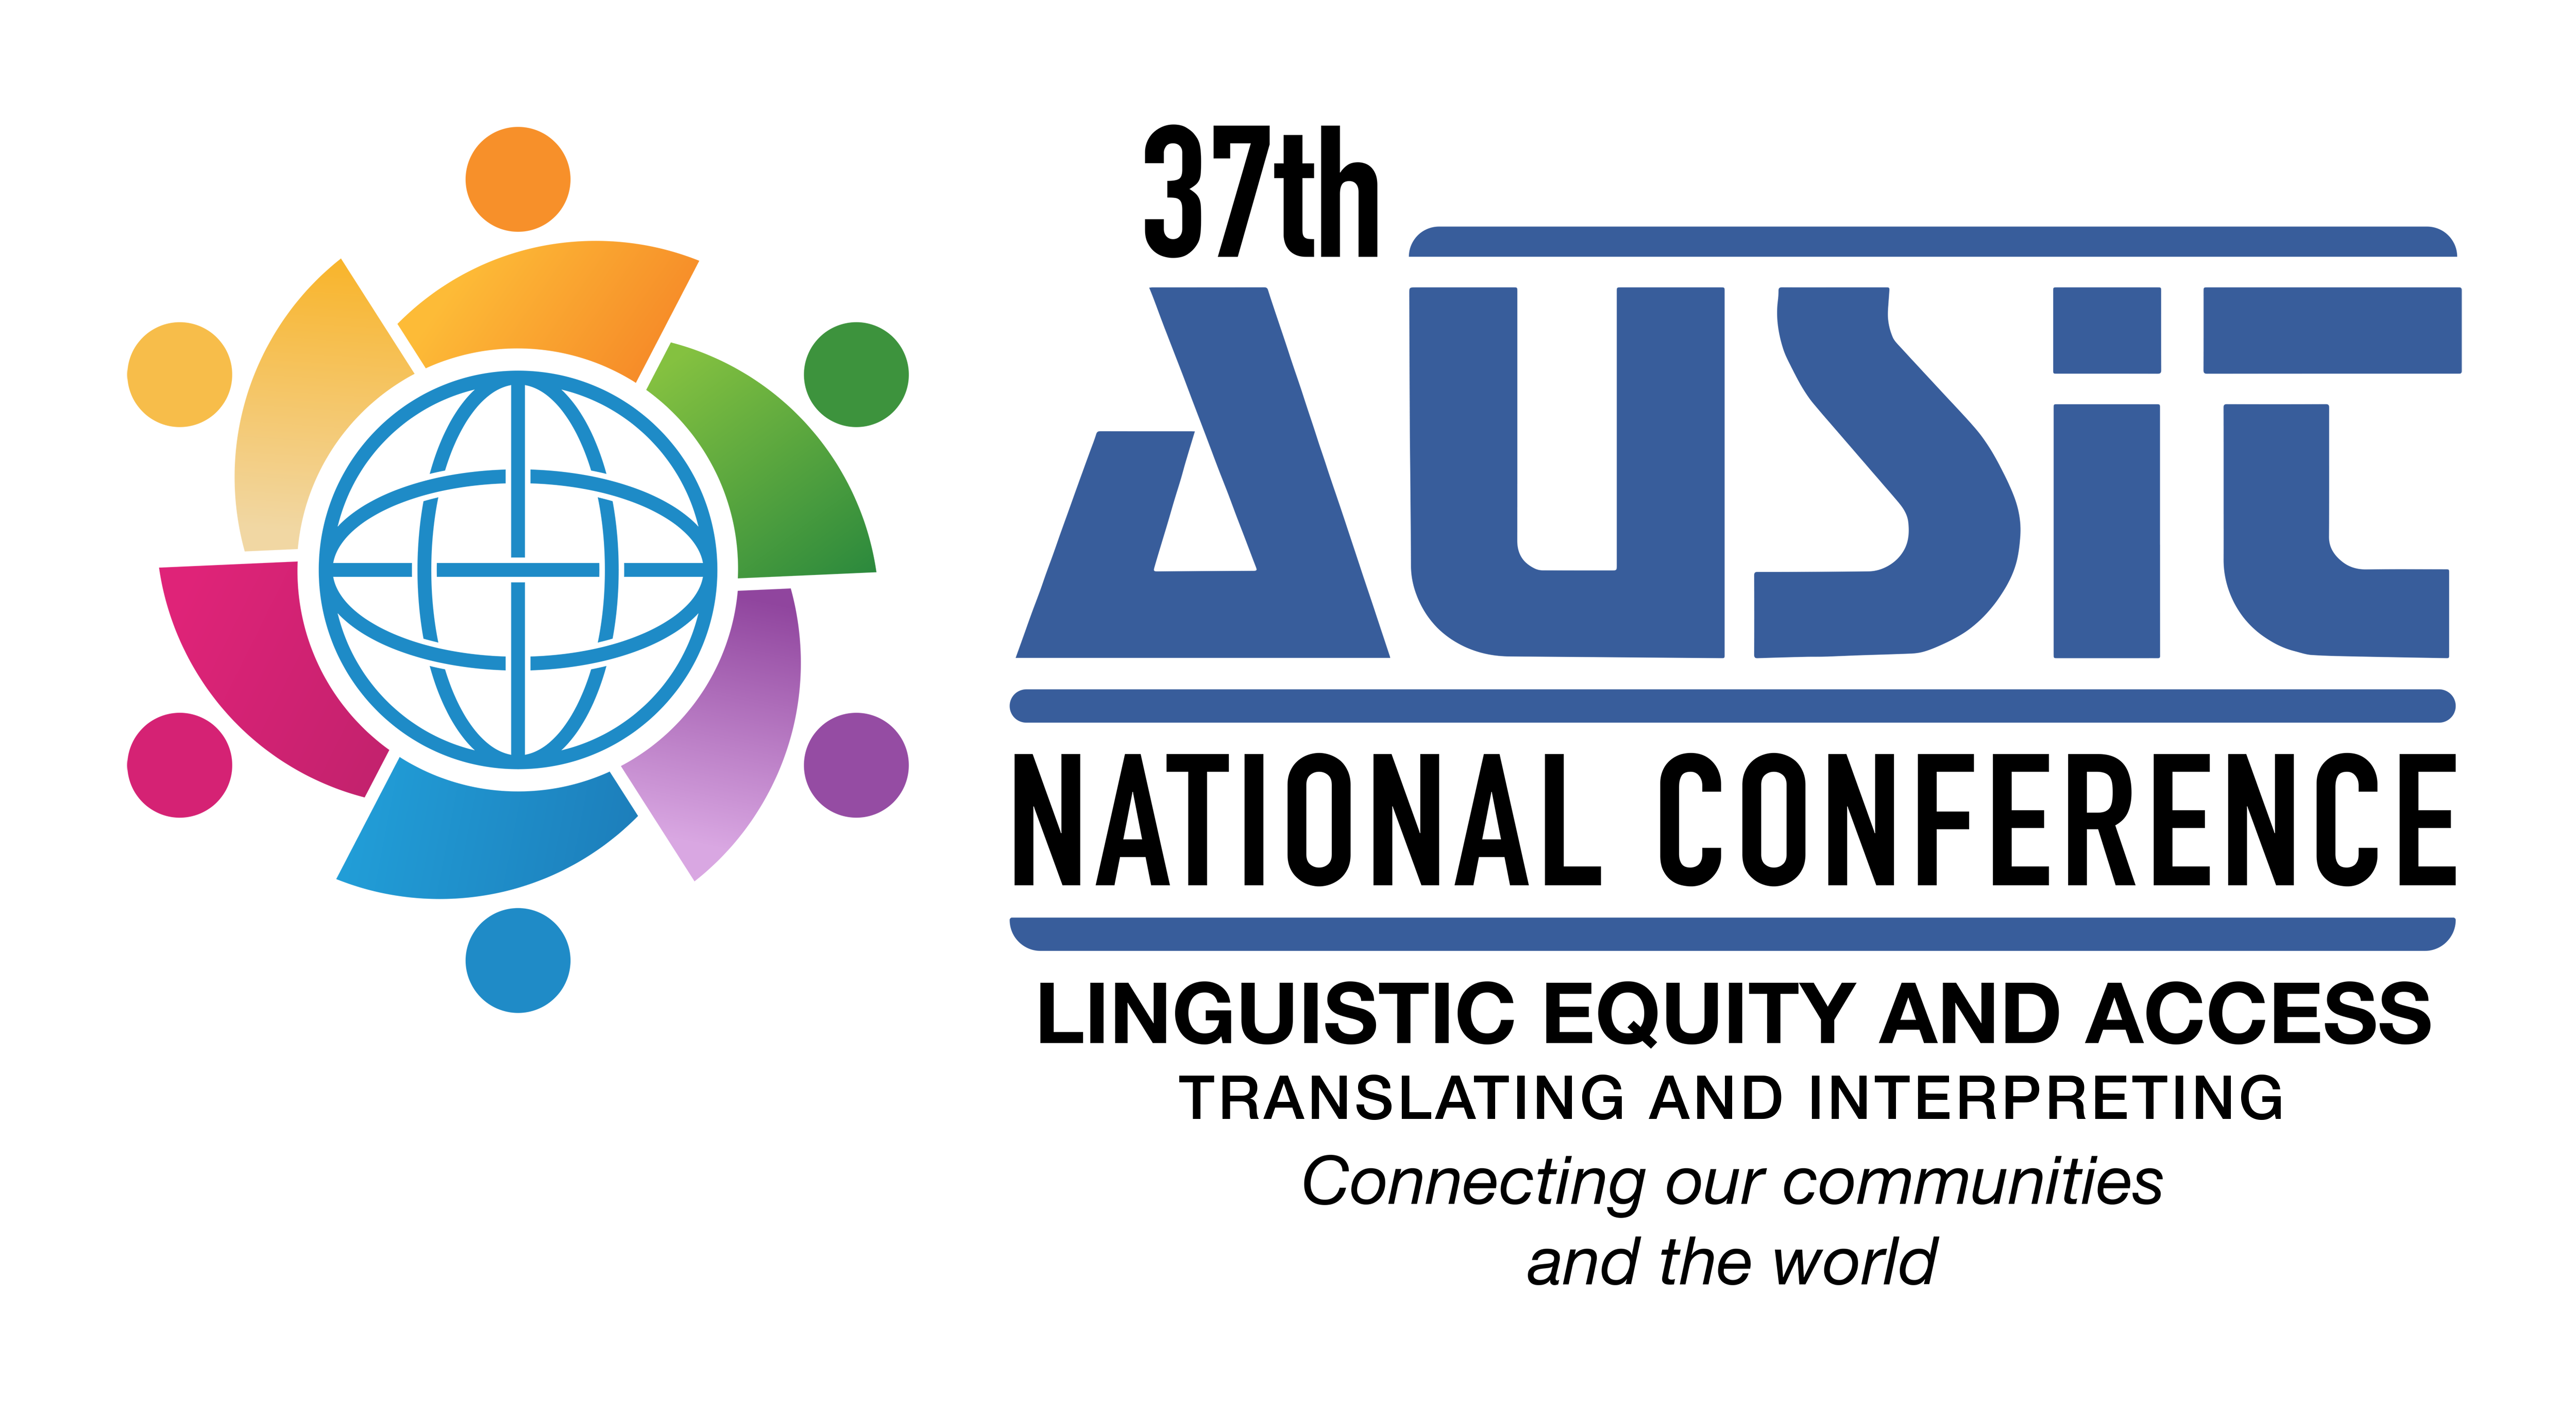 Ausit Conference Logo Horizontalv2